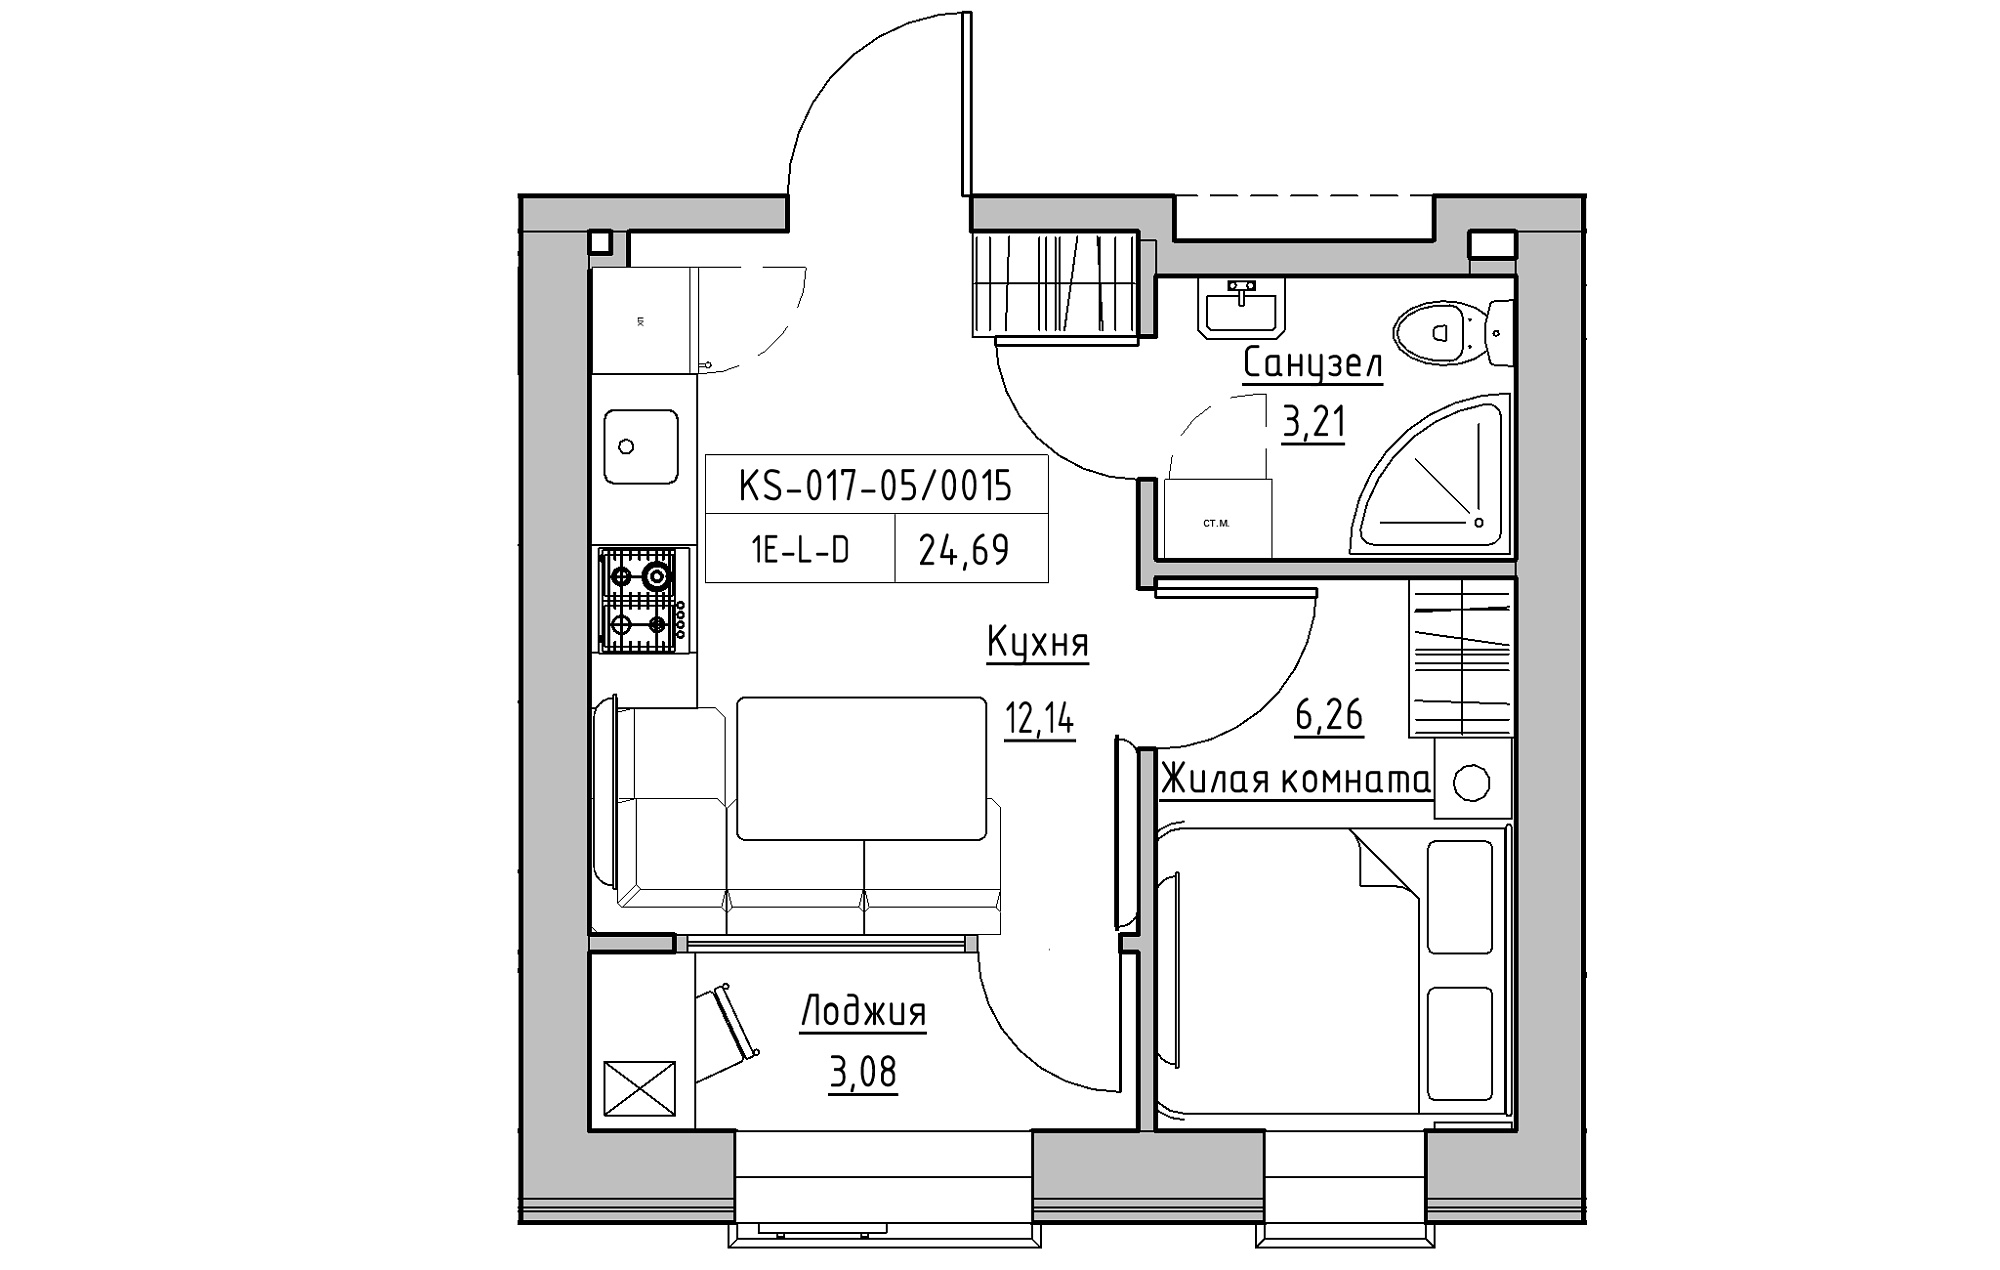 Планування 1-к квартира площею 24.69м2, KS-017-05/0015.